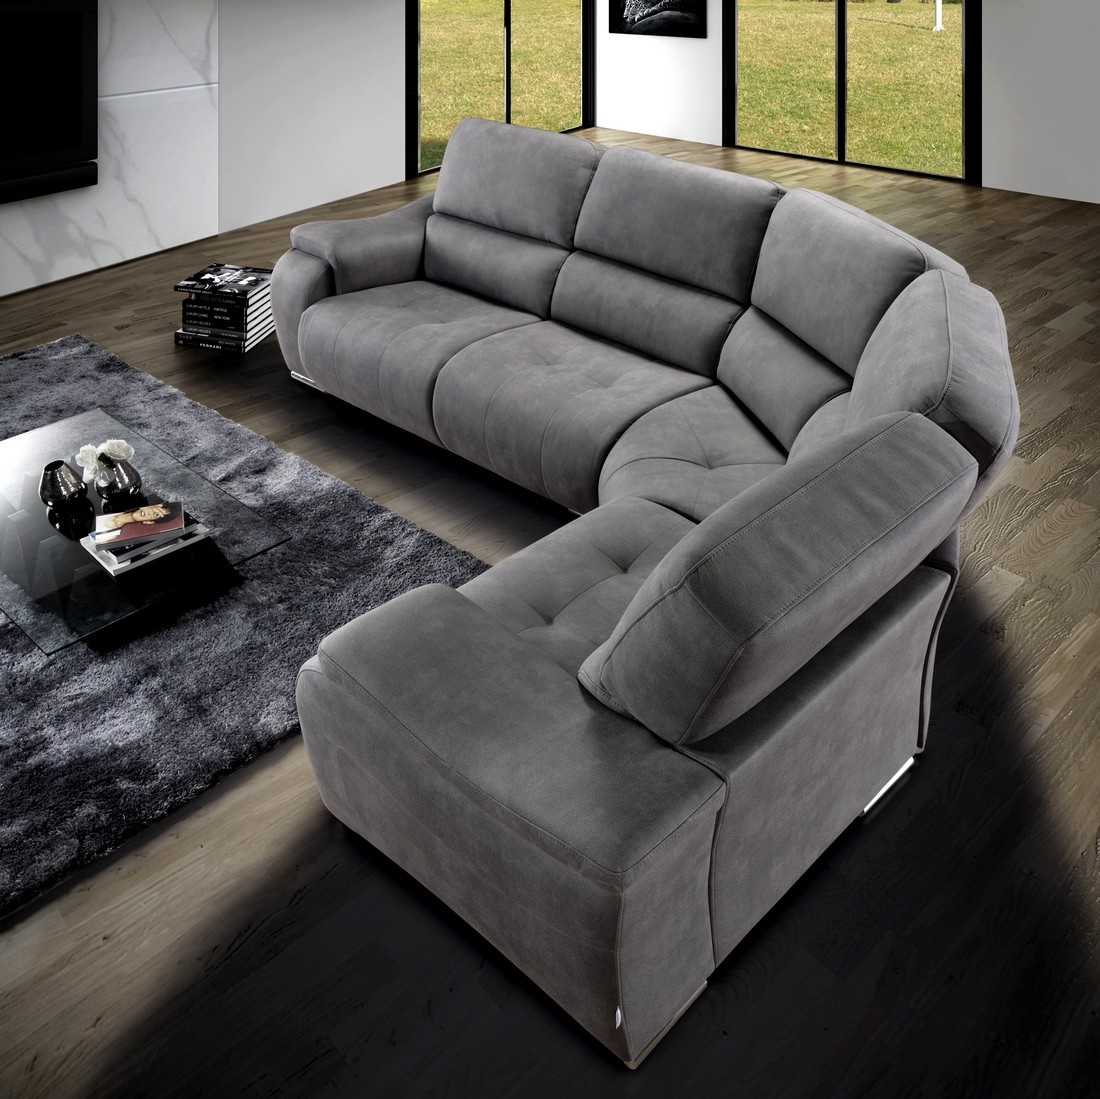 O sofá de canto Koris é a escolha certa para quem procura design moderno, conforto e utilidade. Uma peça versátil que se adapta facilmente a qualquer ambiente.